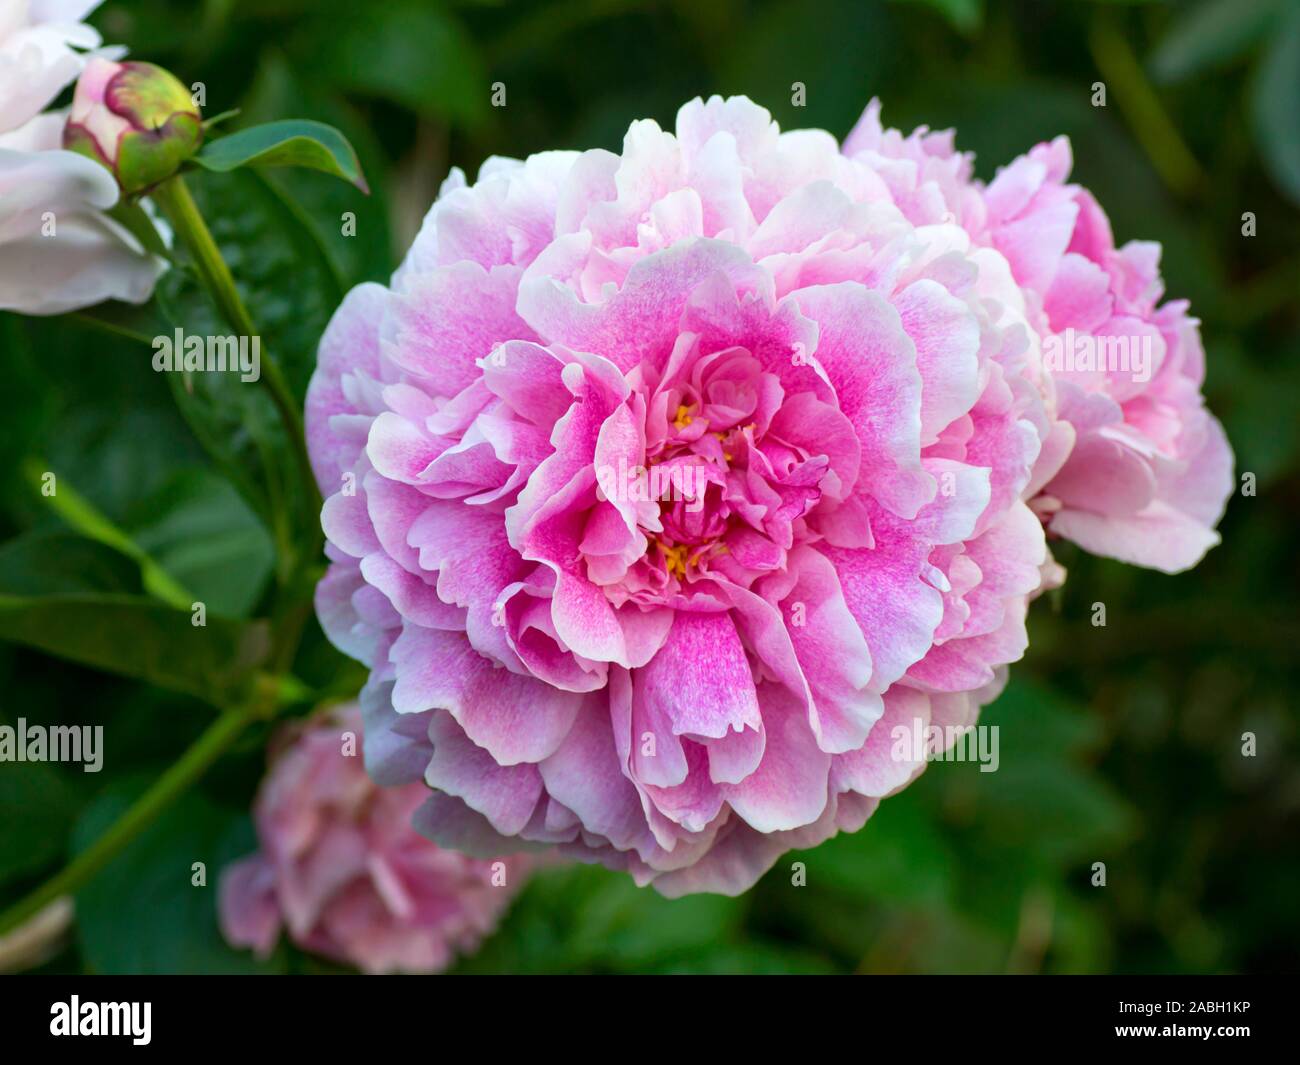 El cervatillo de Peonía. Doble rosa peonía. Paeonia lactiflora (Chino o peonía peonía jardín común). Foto de stock